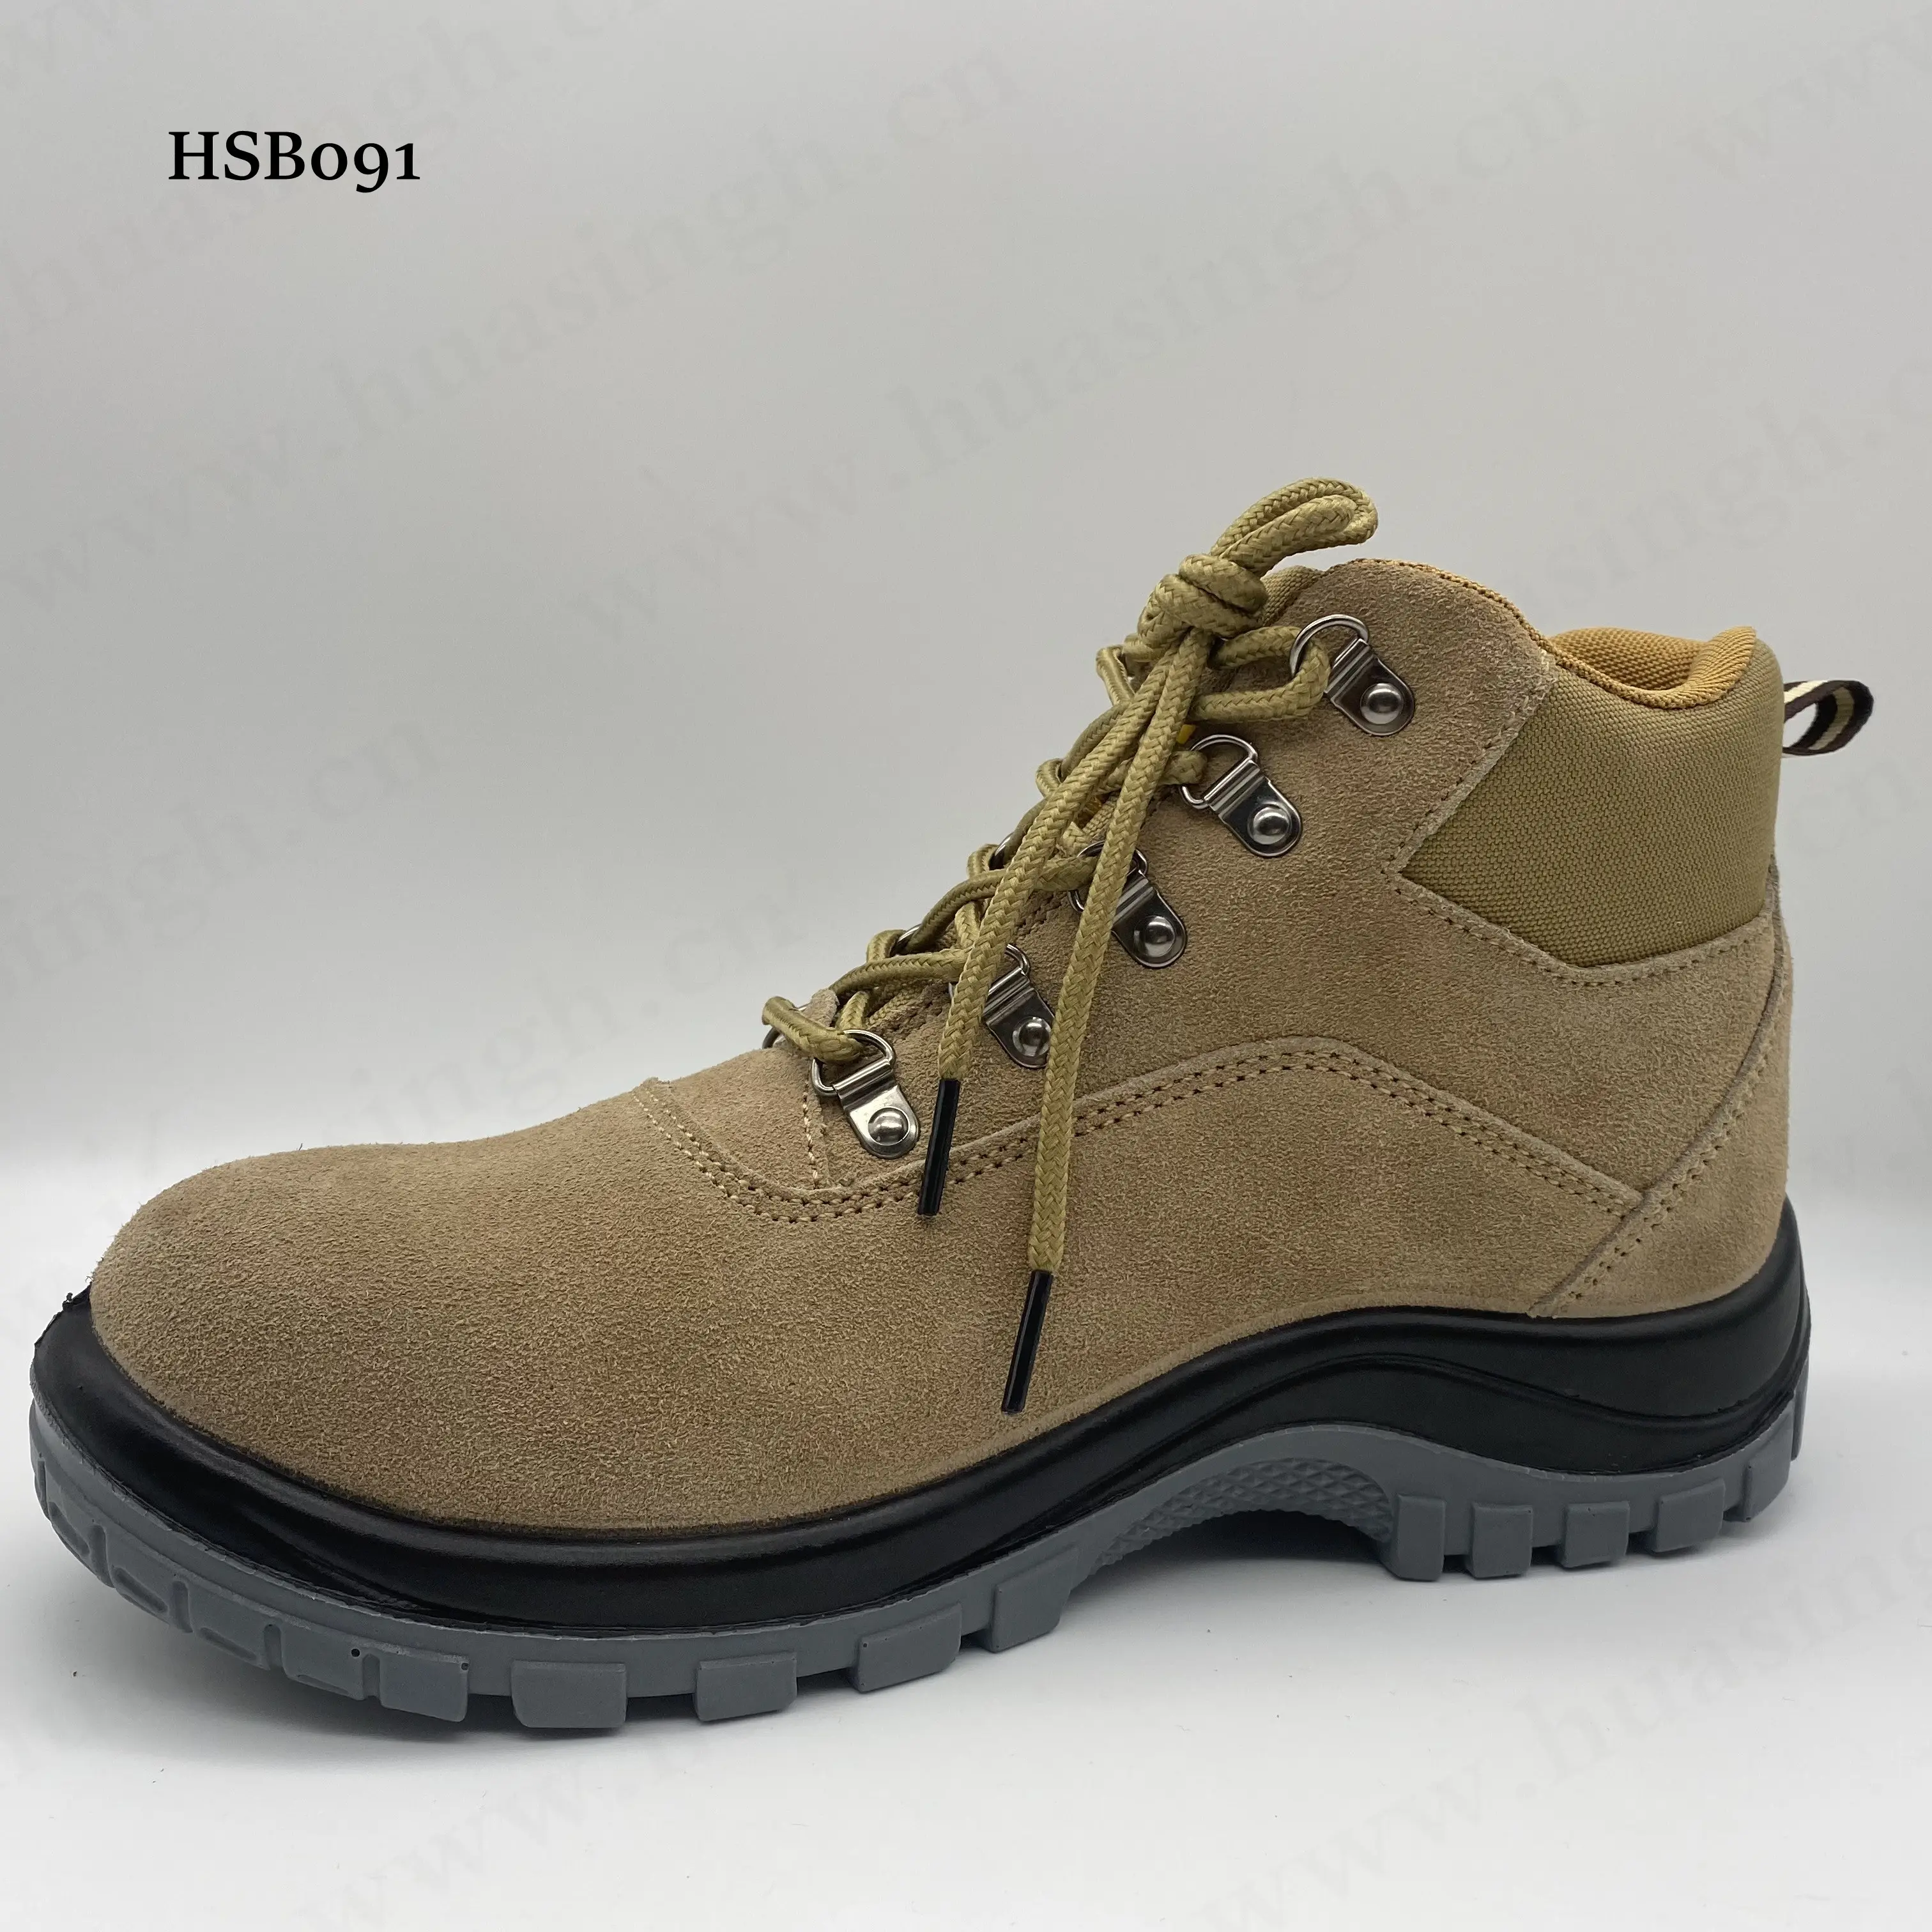 Lxg sapatos masculinos para construção, sapatos de segurança pu/pu com inserção no dedo do pé médio, à prova de ácido, hsb091